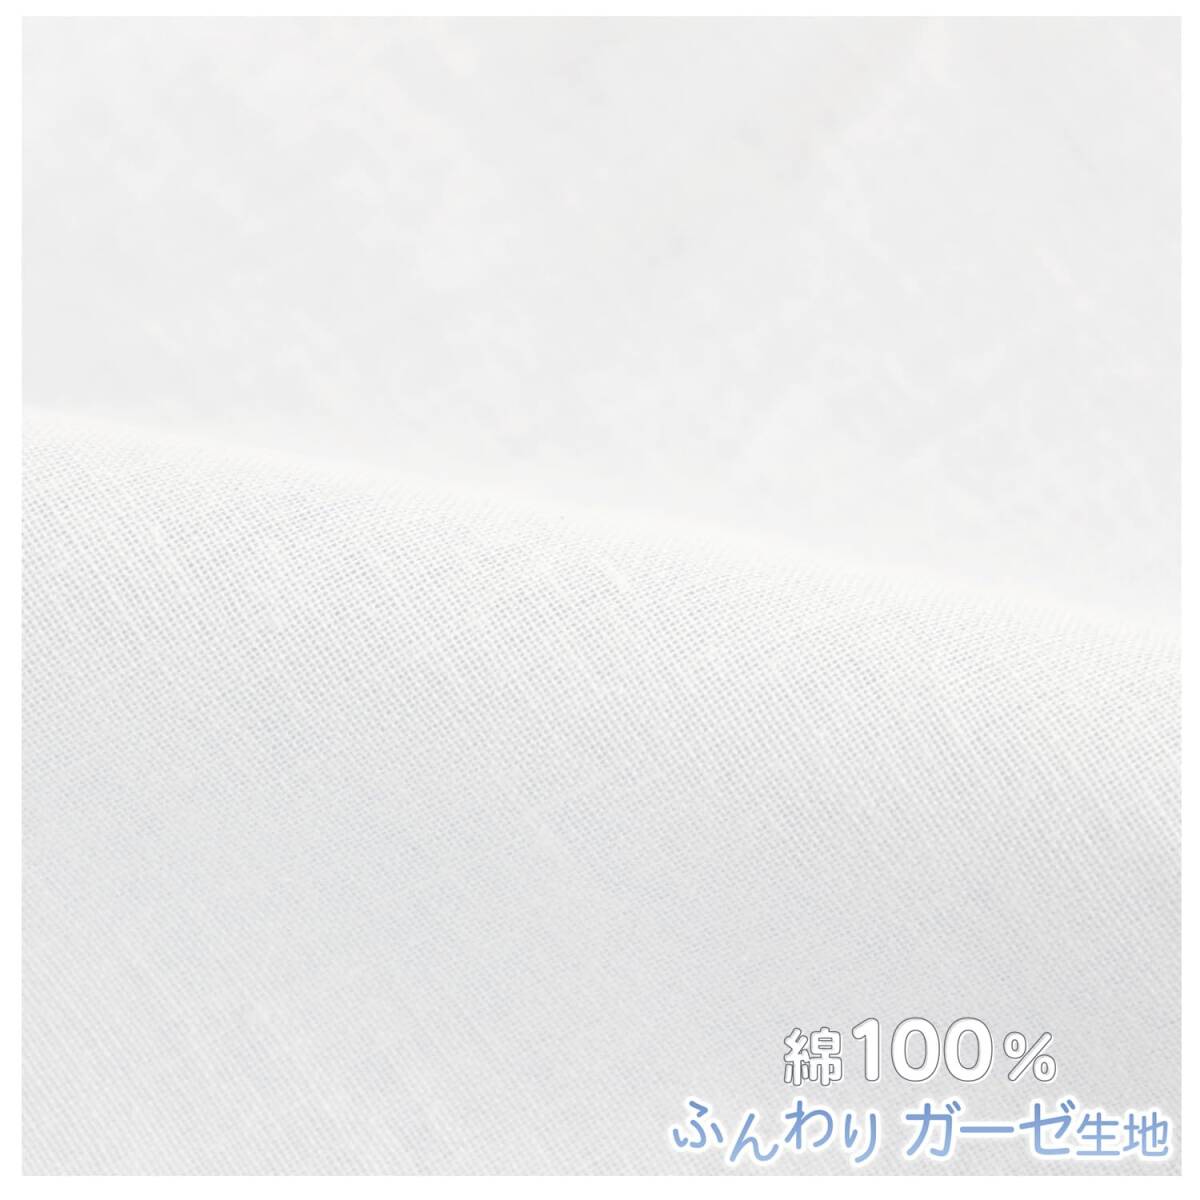 メリーナイト 肌布団カバー ガーゼ ホワイト シングル 約140×190cm 肌布団 キルトケット 綿100% 軽量 通気性 ふんわりやさしい肌_画像4